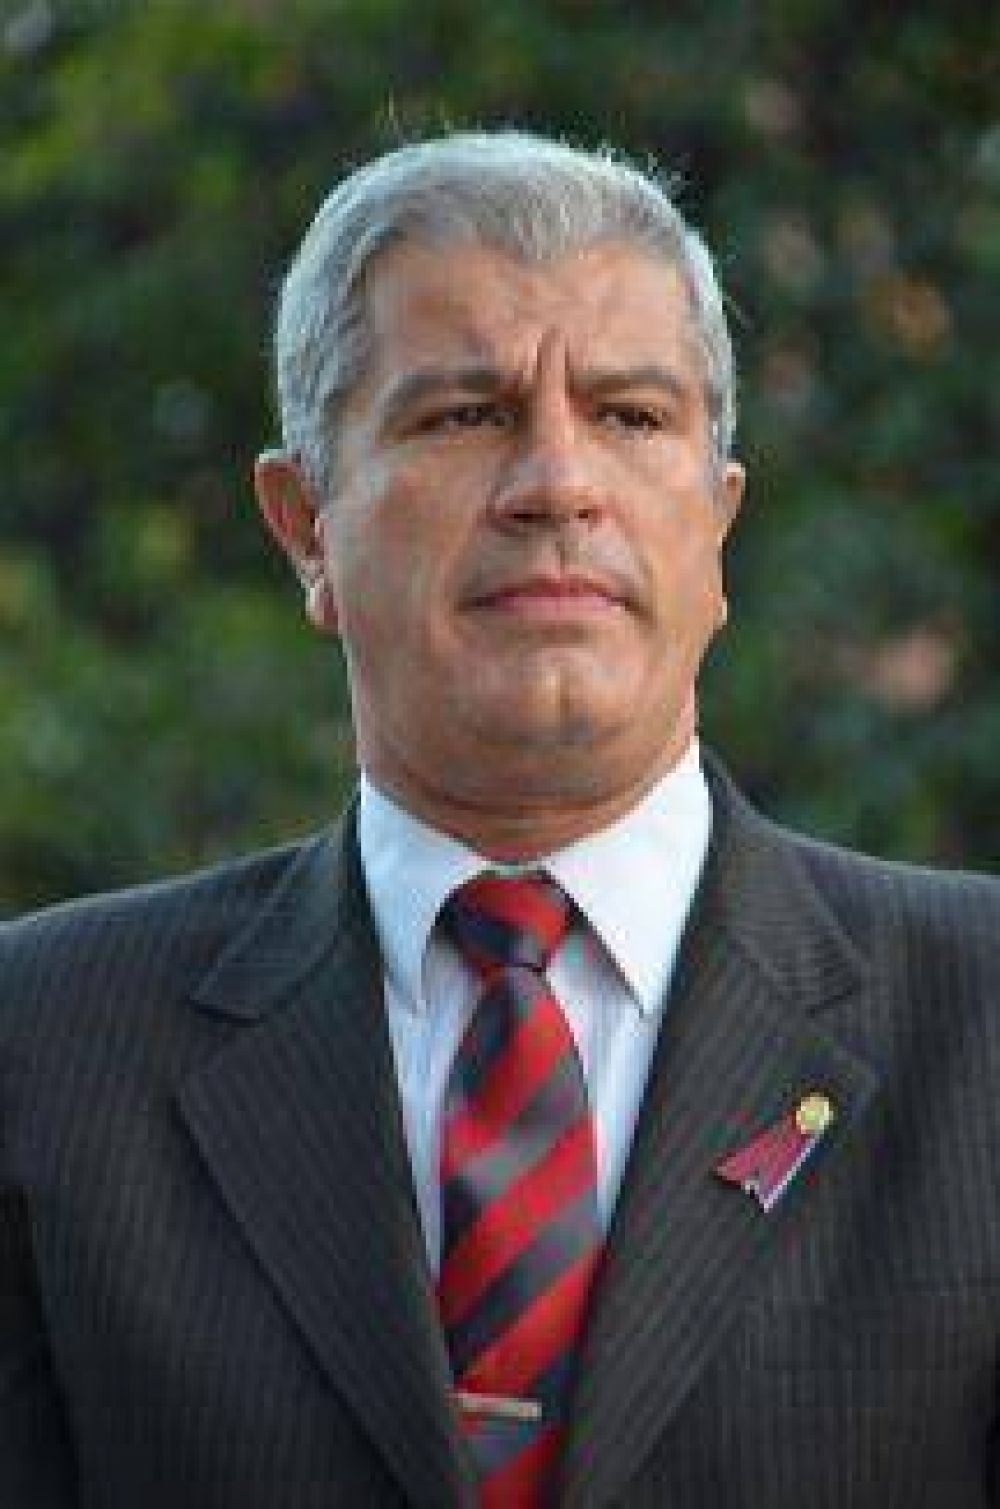 Andrs Zottos se lanz como precandidato a Senador nacional, luego de la ruptura con el FPV